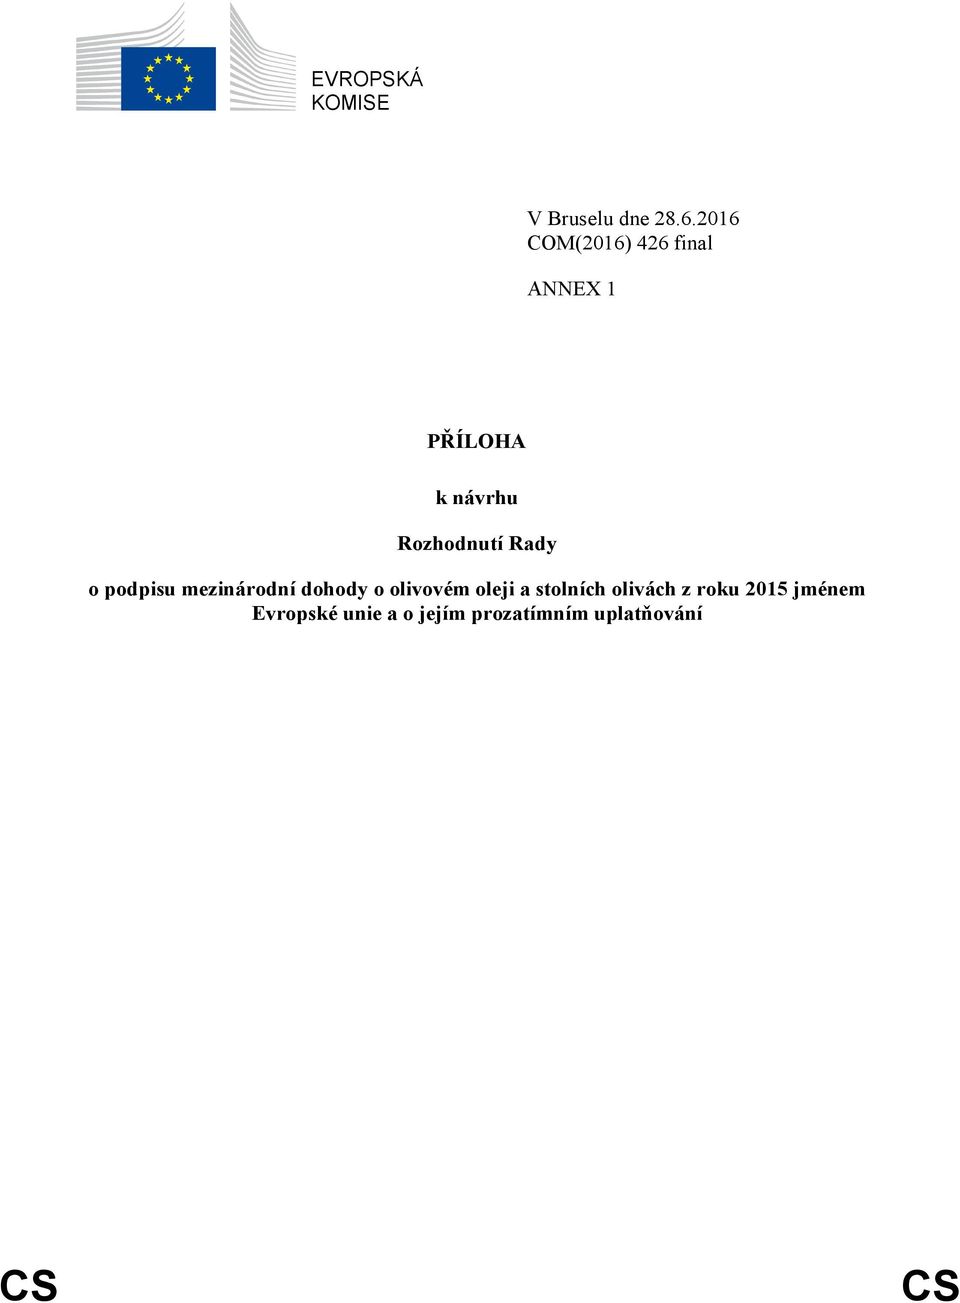 Rozhodnutí Rady o podpisu mezinárodní dohody o olivovém